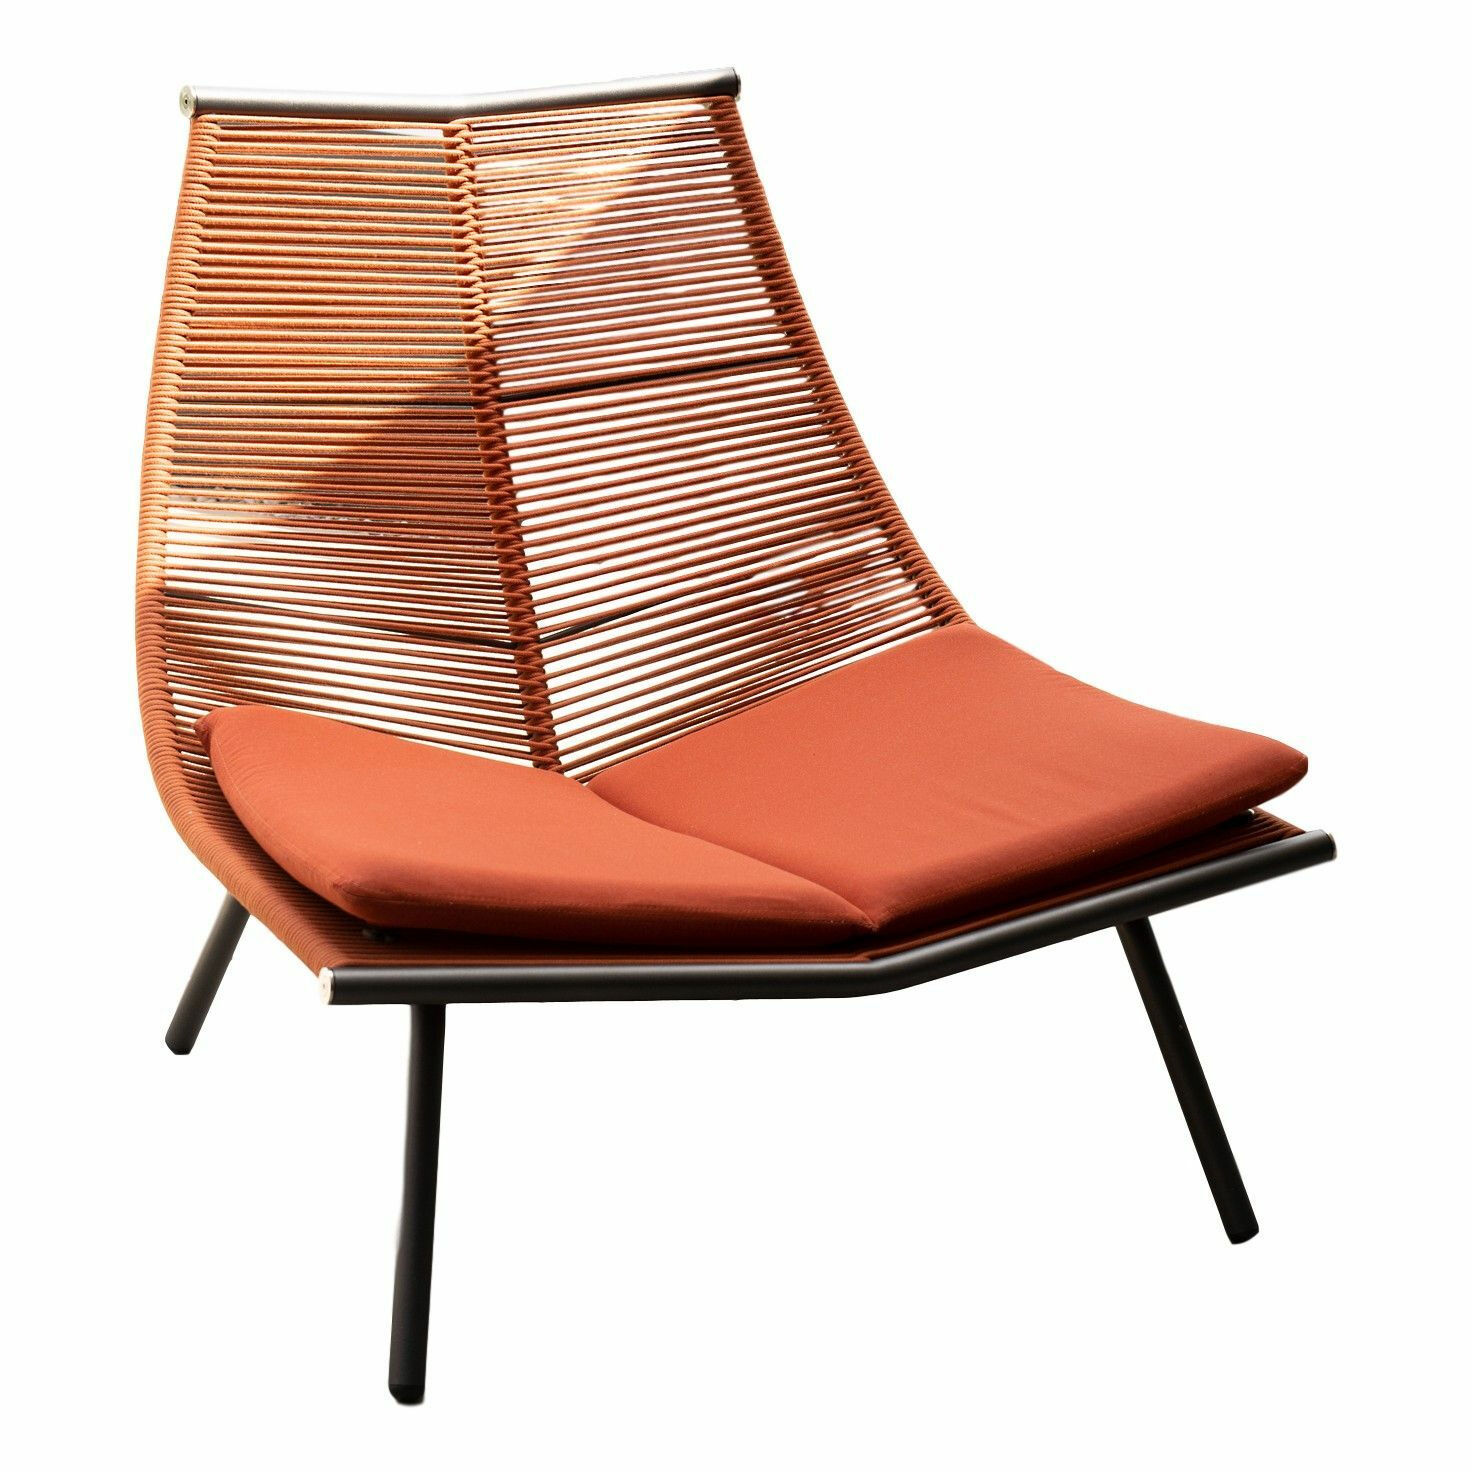 roda-lounge-chair-laze-polyester-schnur-orange-08-mit-sitzkissen-mf-0006280-001